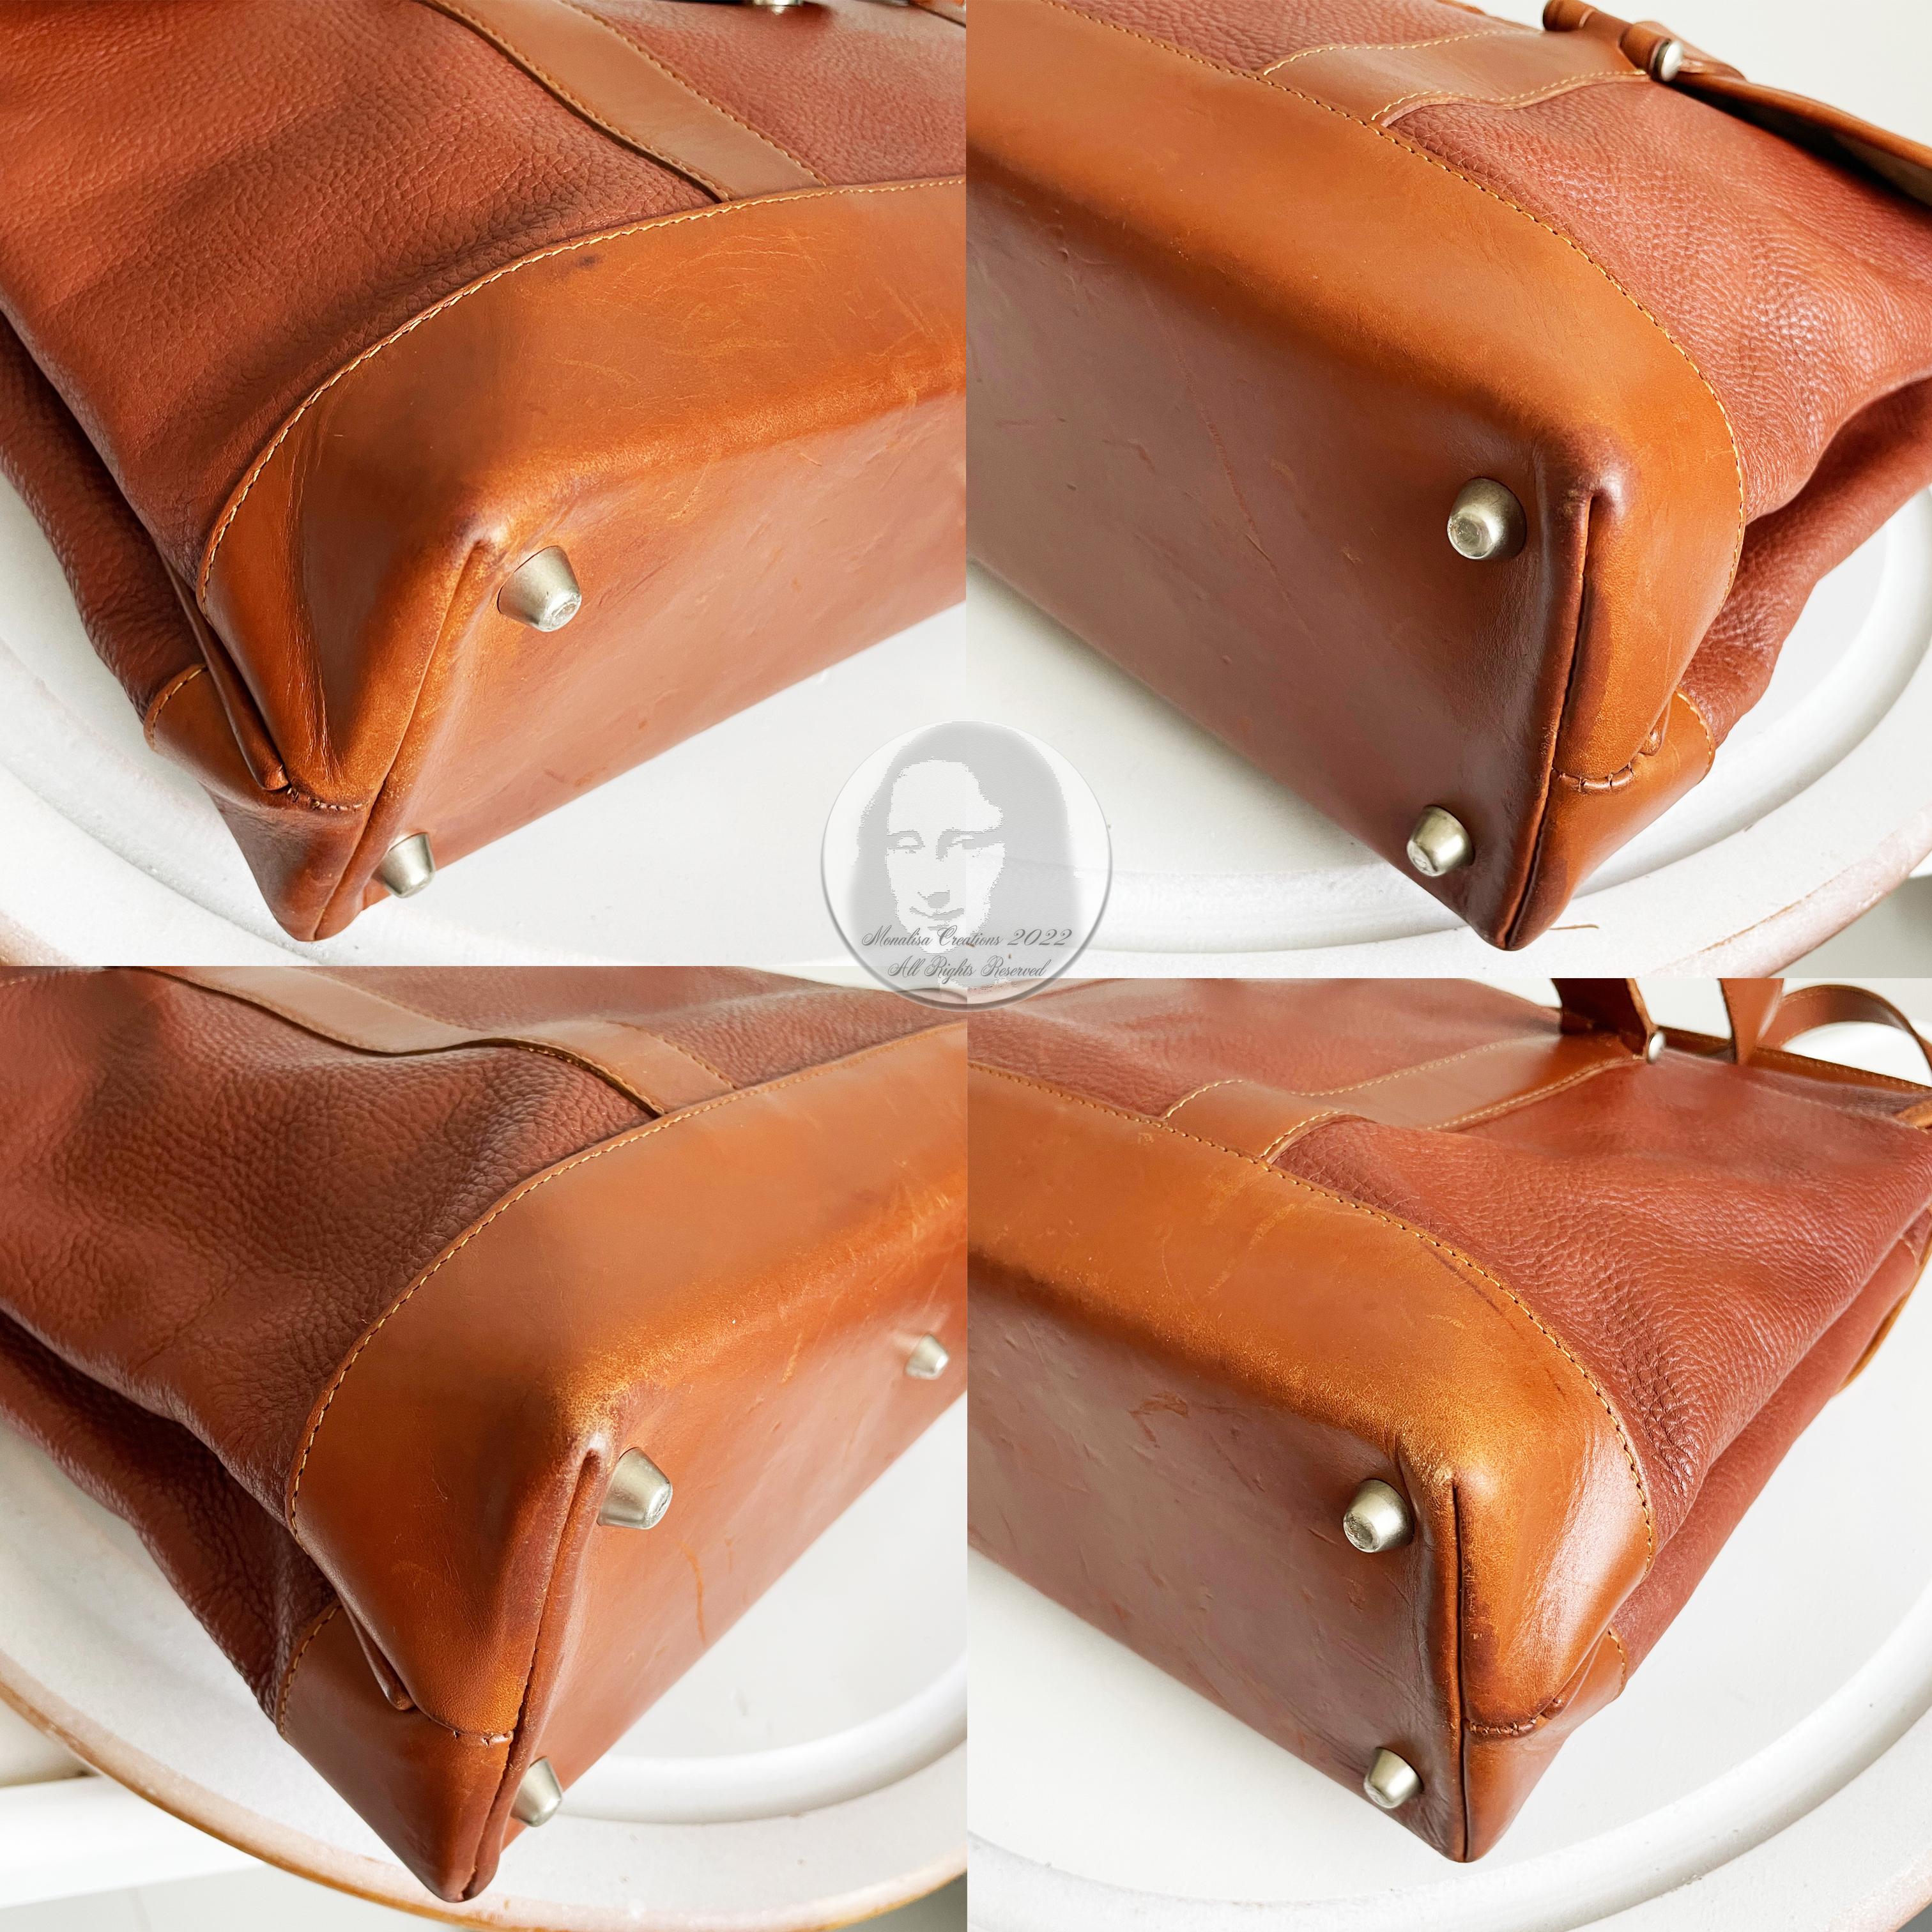 Hartmann Business Bag Briefcase Computer or Shoulder Bag British Tan Leather 7